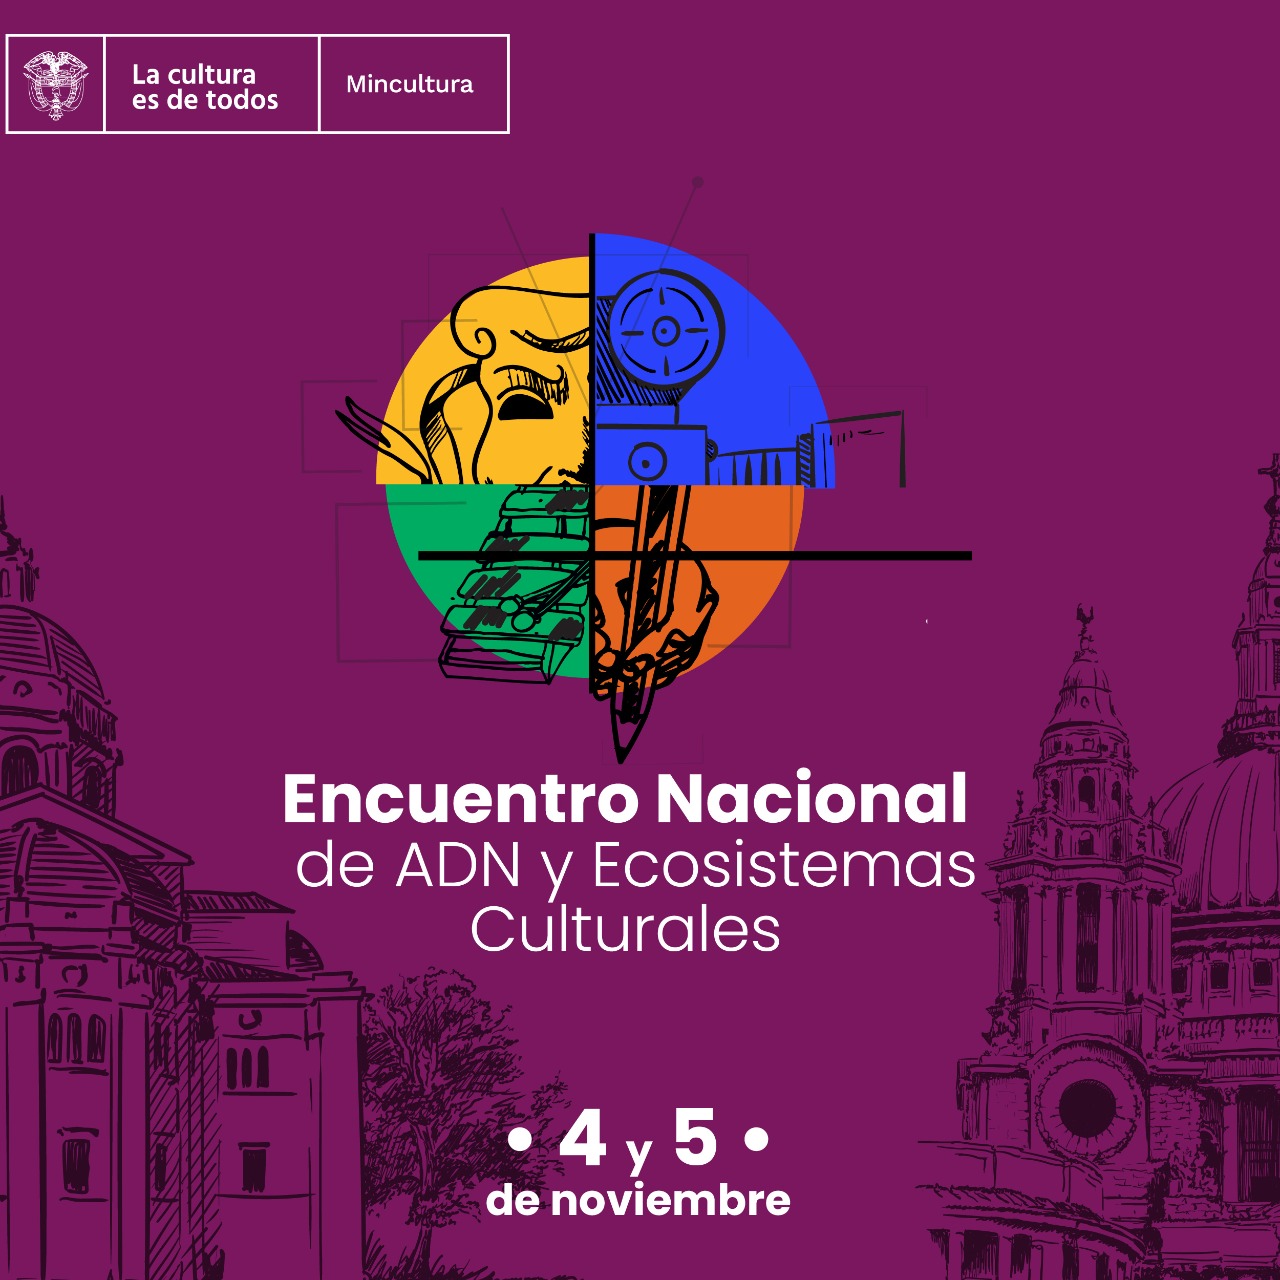 Más de 150 agentes culturales harán parte del I Encuentro Nacional de ADN